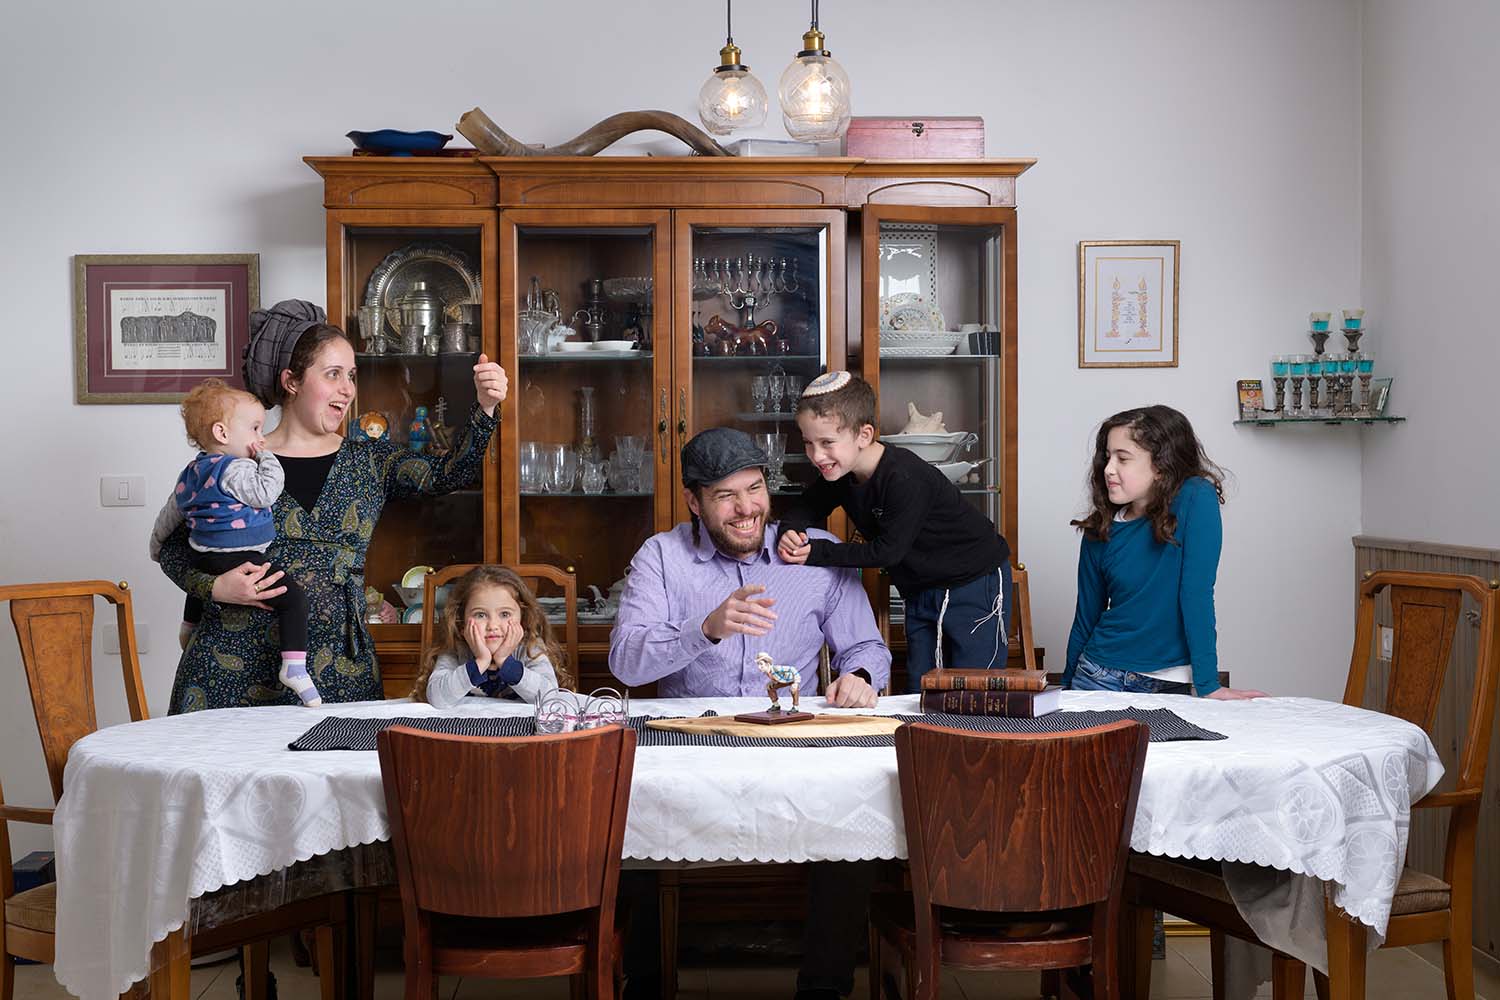 משפחת פרץ (מימין לשמאל): רות, איתן נריה, אלעד, מעיין אהבה, אורה שרה ועדי. הילדים עוזרים במטבח &#8211; בקילוף, בחיתוך. &quot;הגדולה יכולה להכין פסטה או חביתות בהשגחתי&quot; (צילום: יונתן בלום)